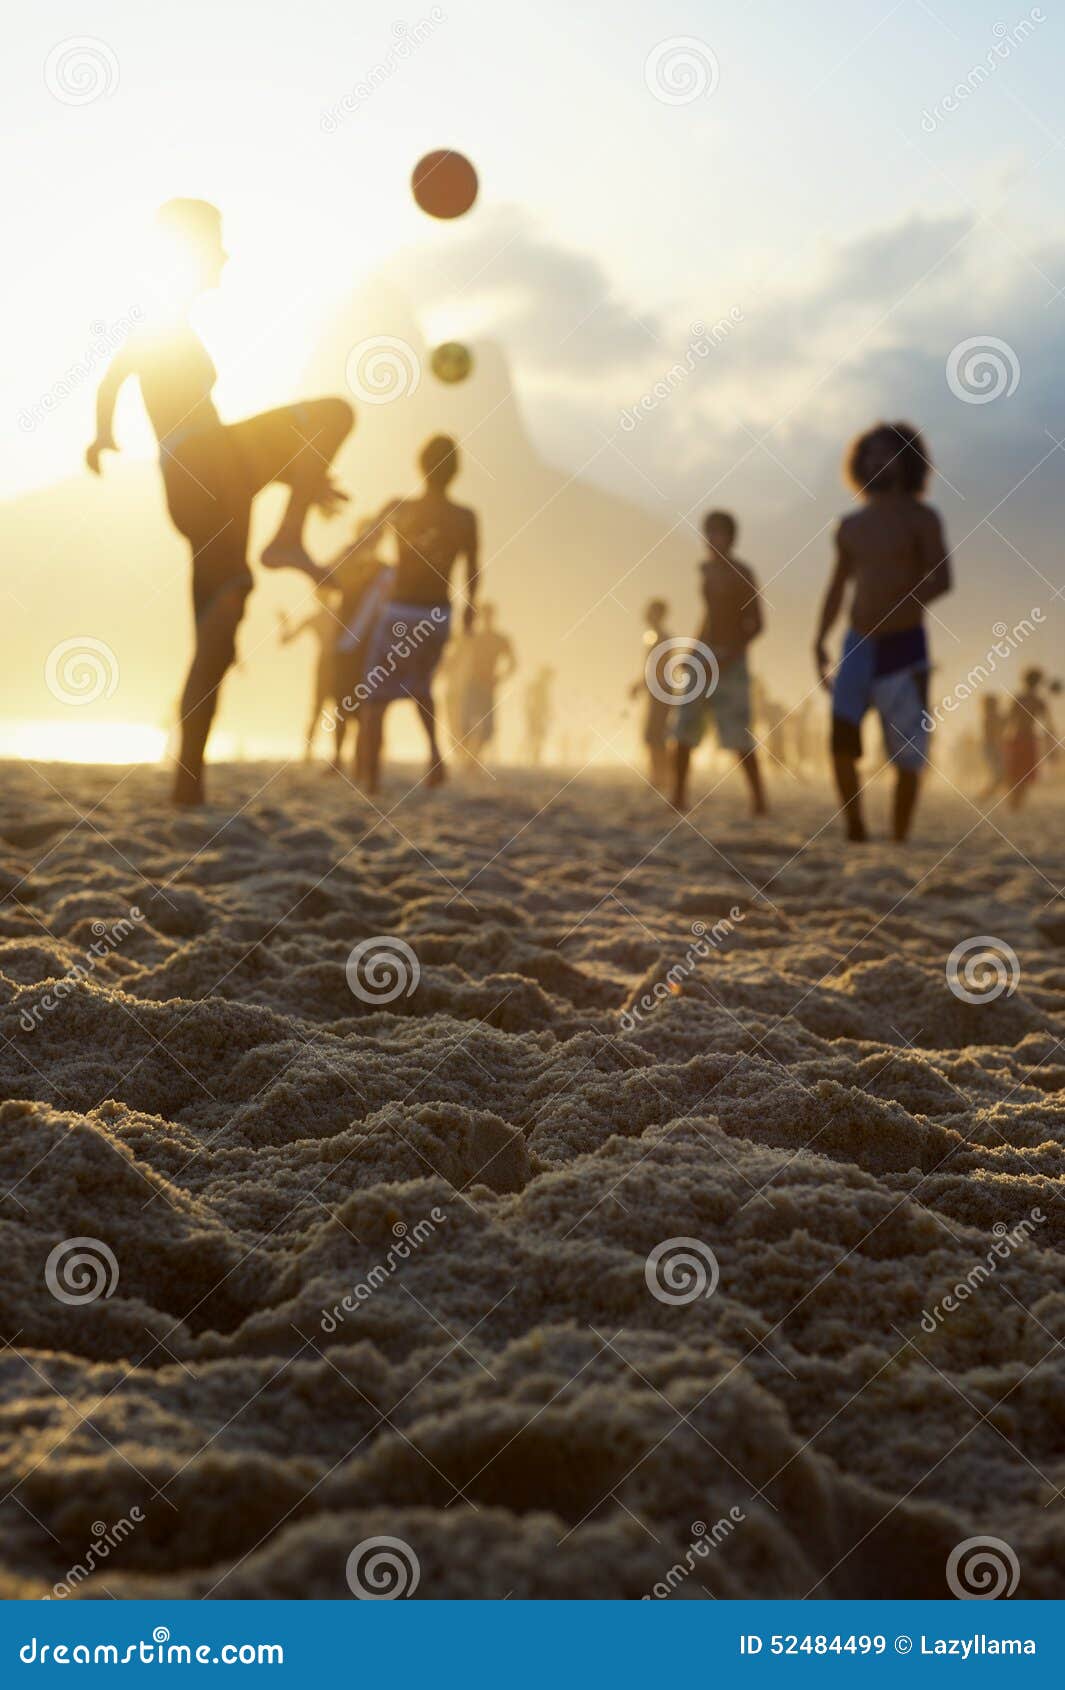 sunset silhouettes playing altinho futebol beach football brazil